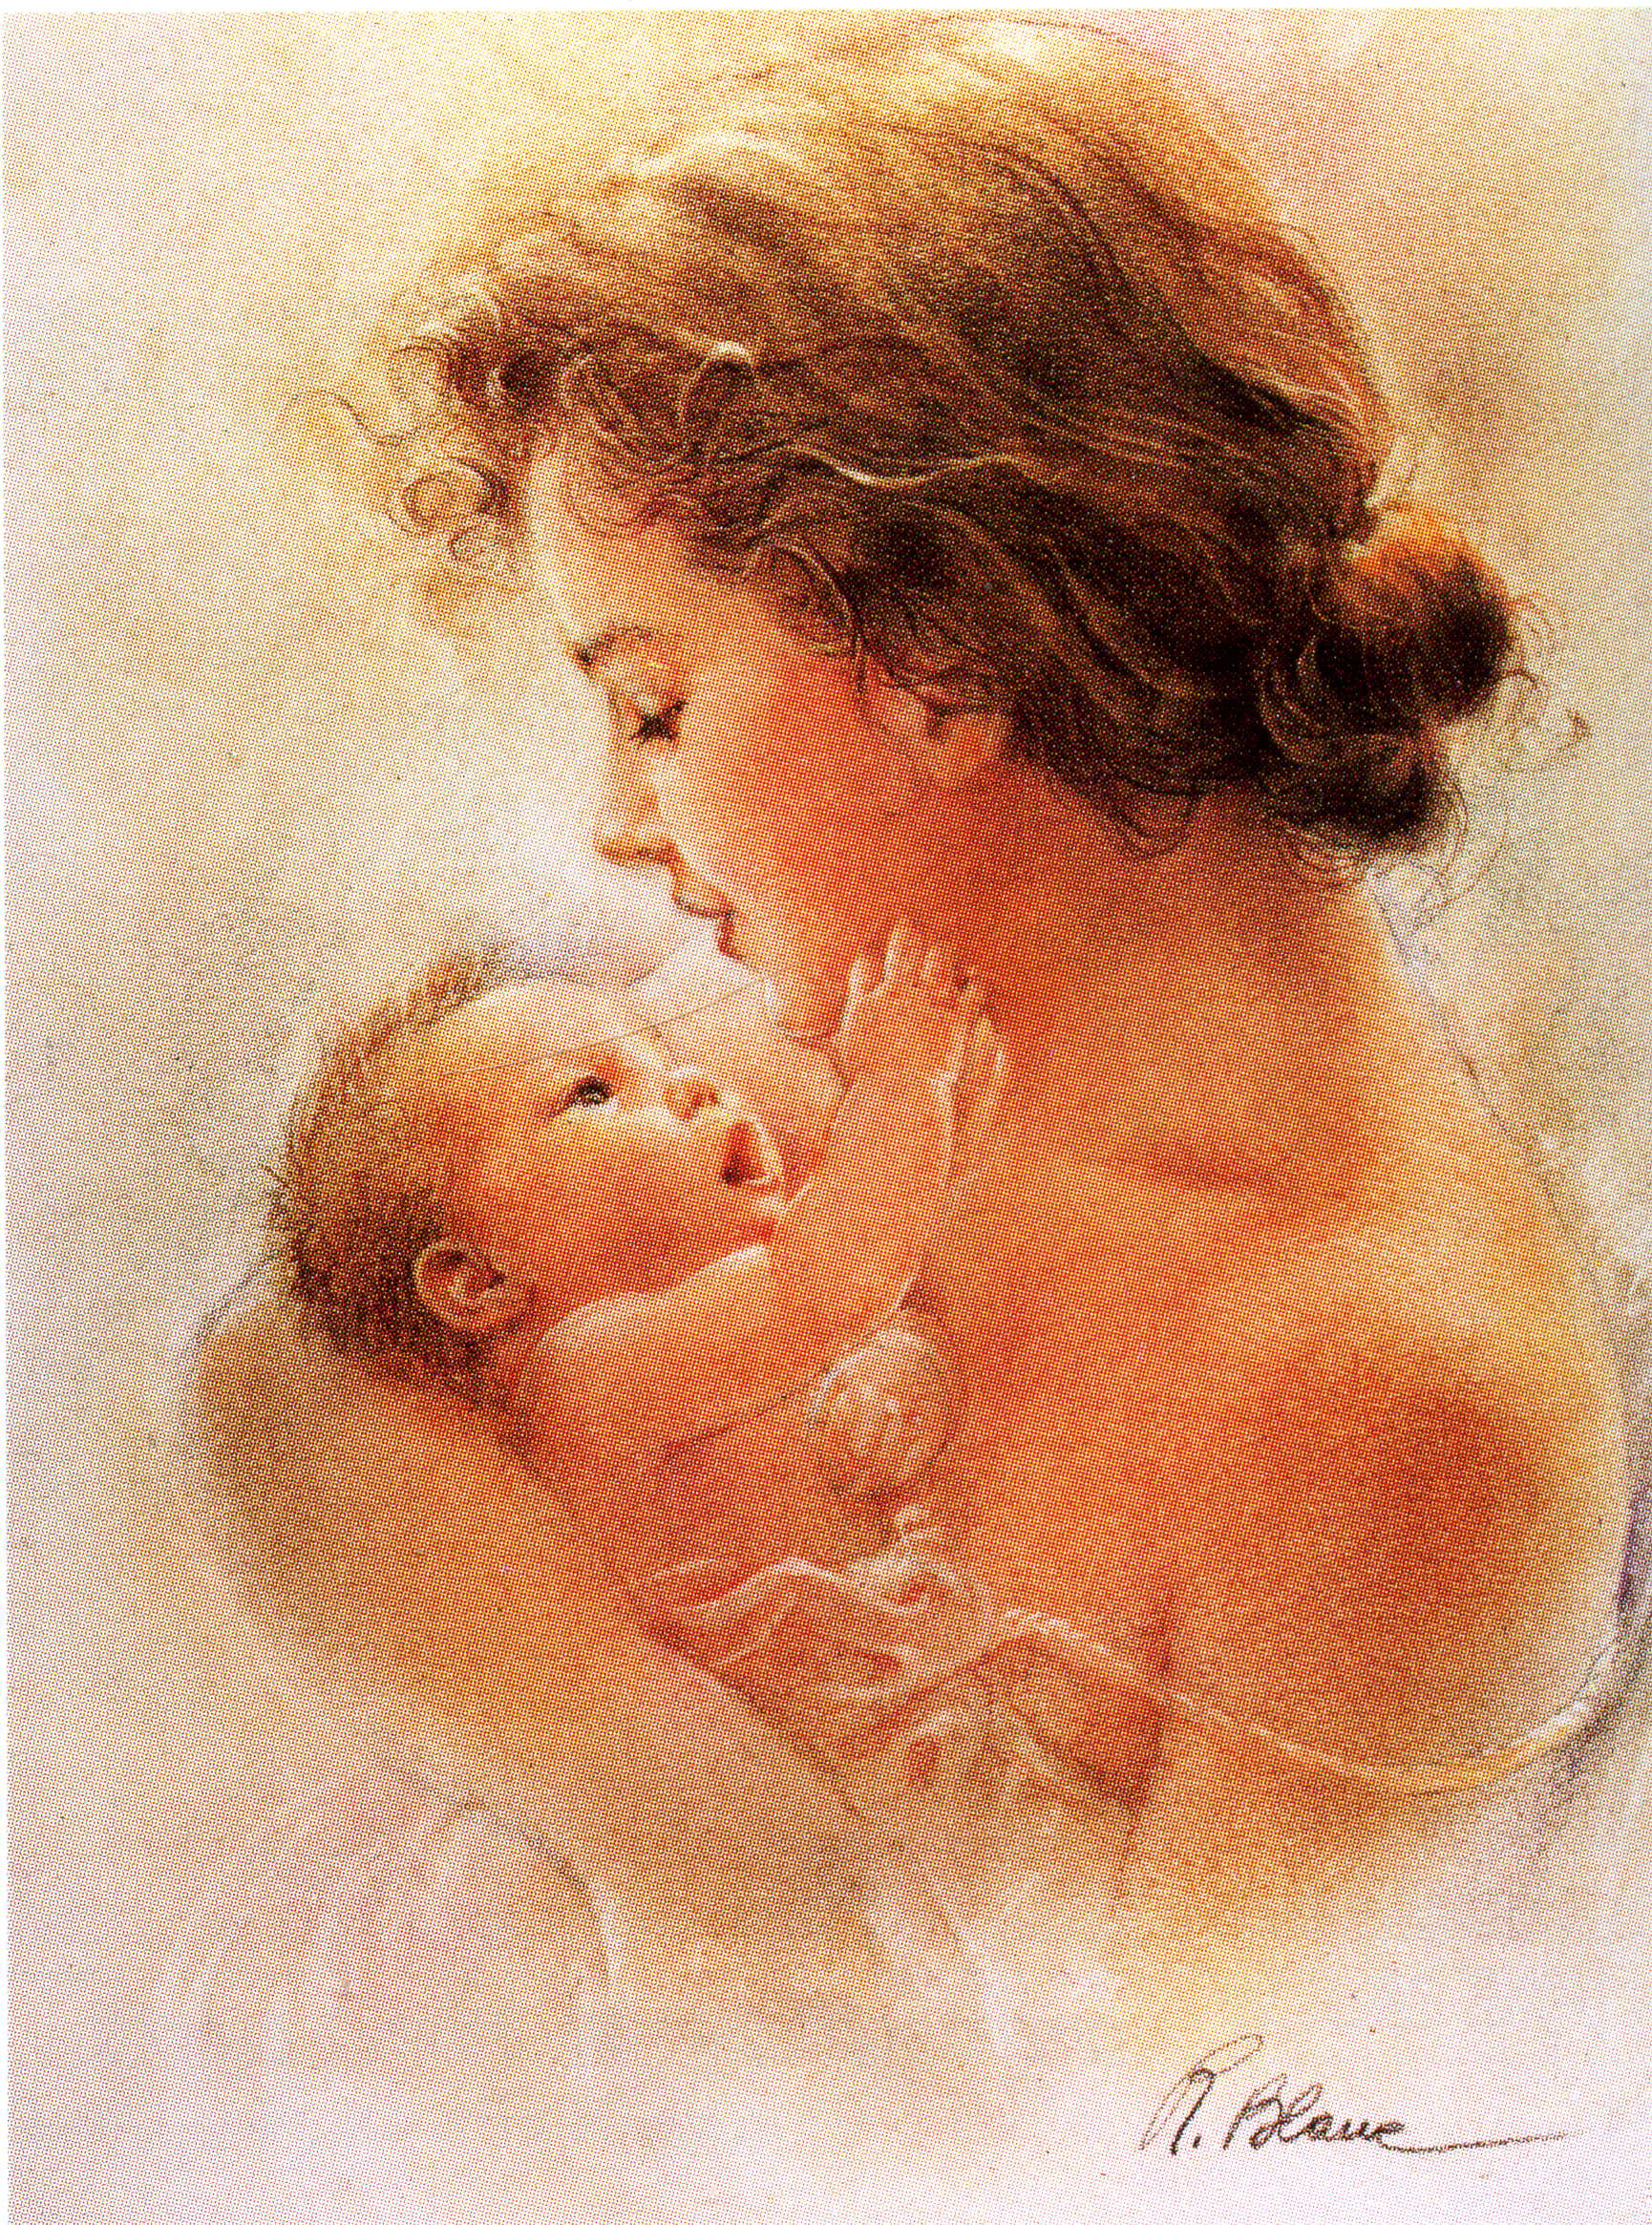 Образ материнства. "Мать и дитя", Жук, 1906. Женщина с ребенком на руках. Женщина с ребенком акварель. Мама с младенцем на руках.